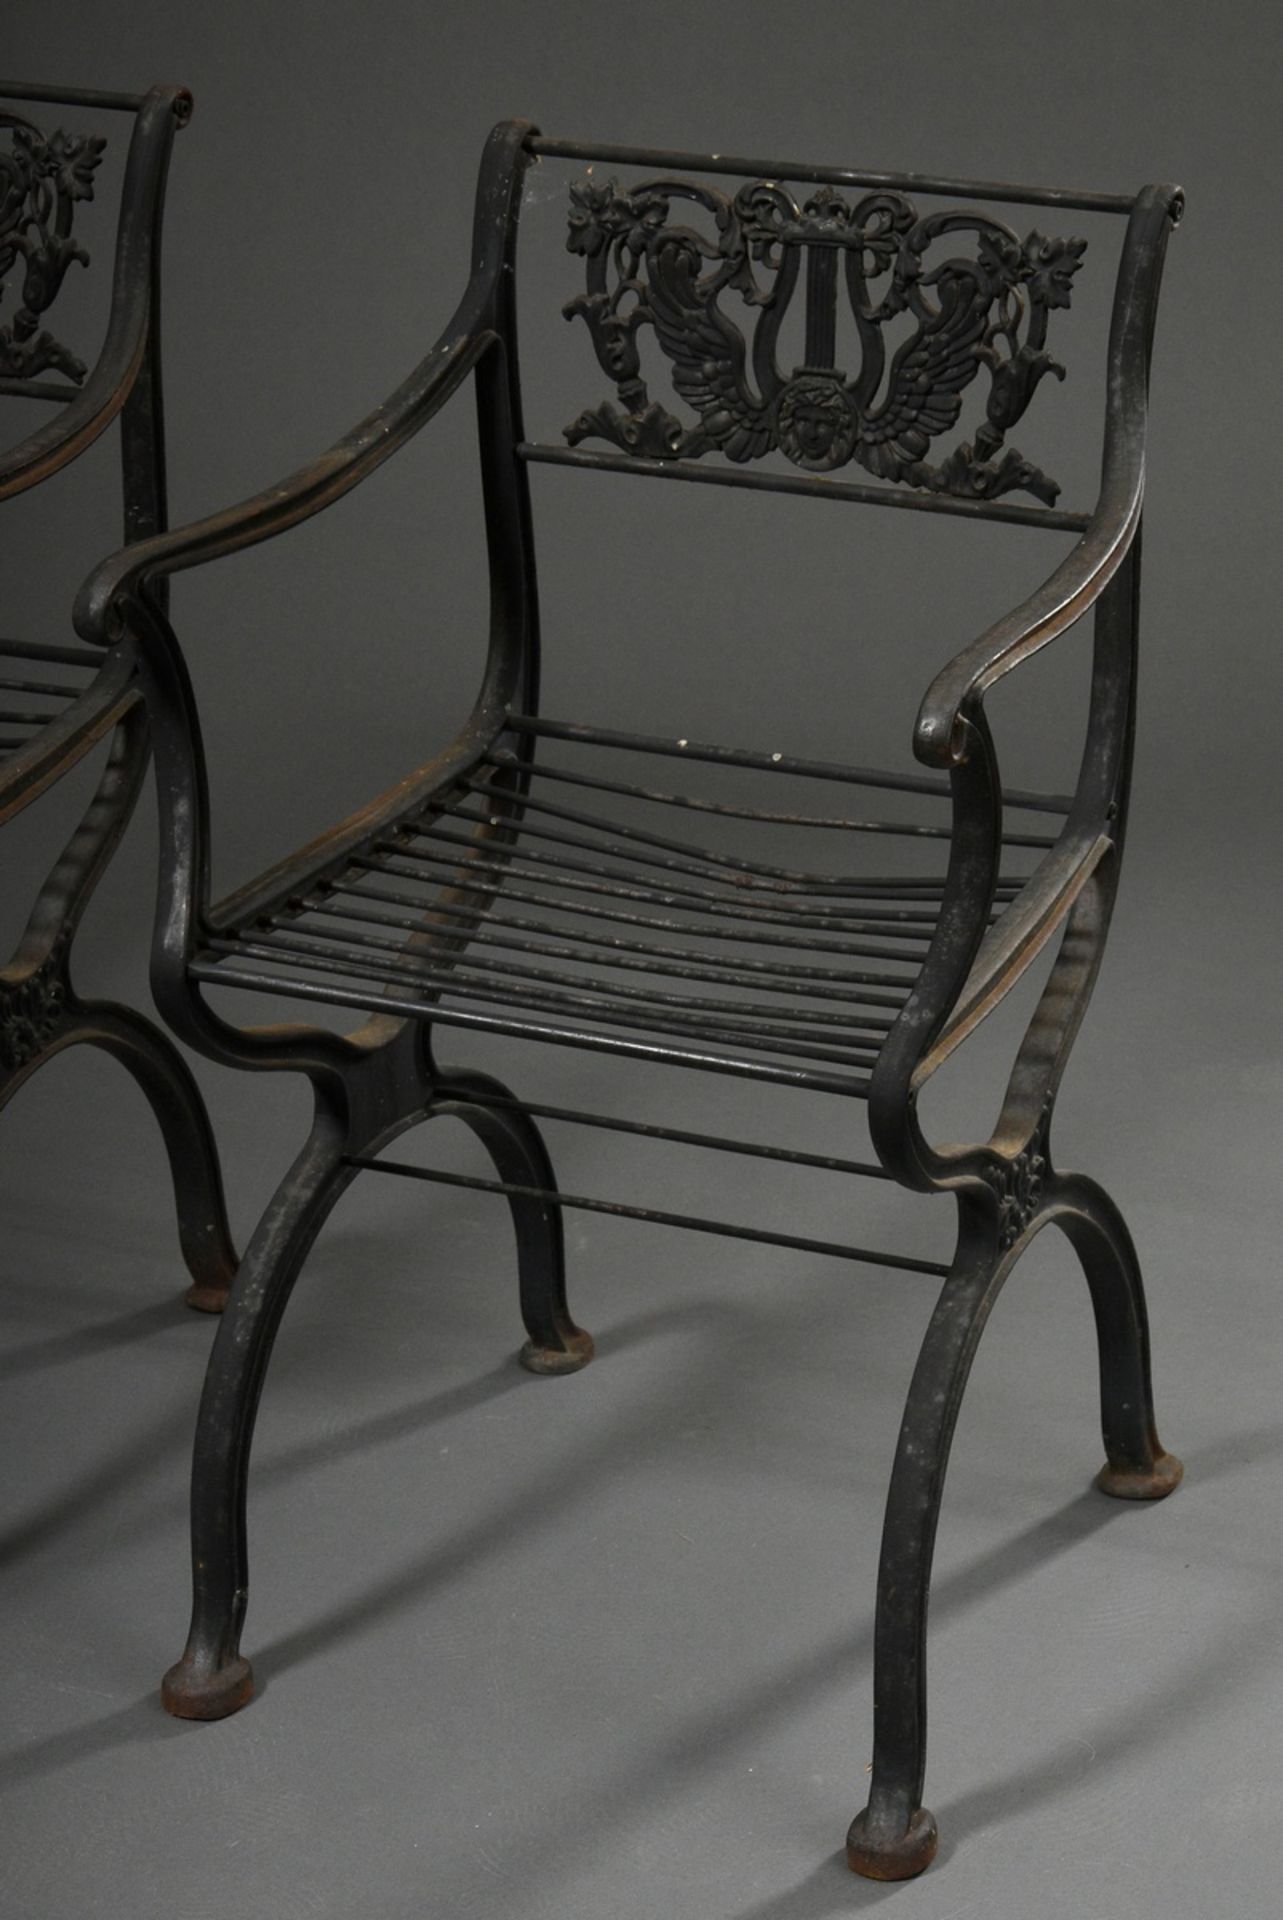 2 Classicist garden chairs with simple cheek frame and backrest "Geflügelte Lyra mit Medusenhaupt u - Image 2 of 4